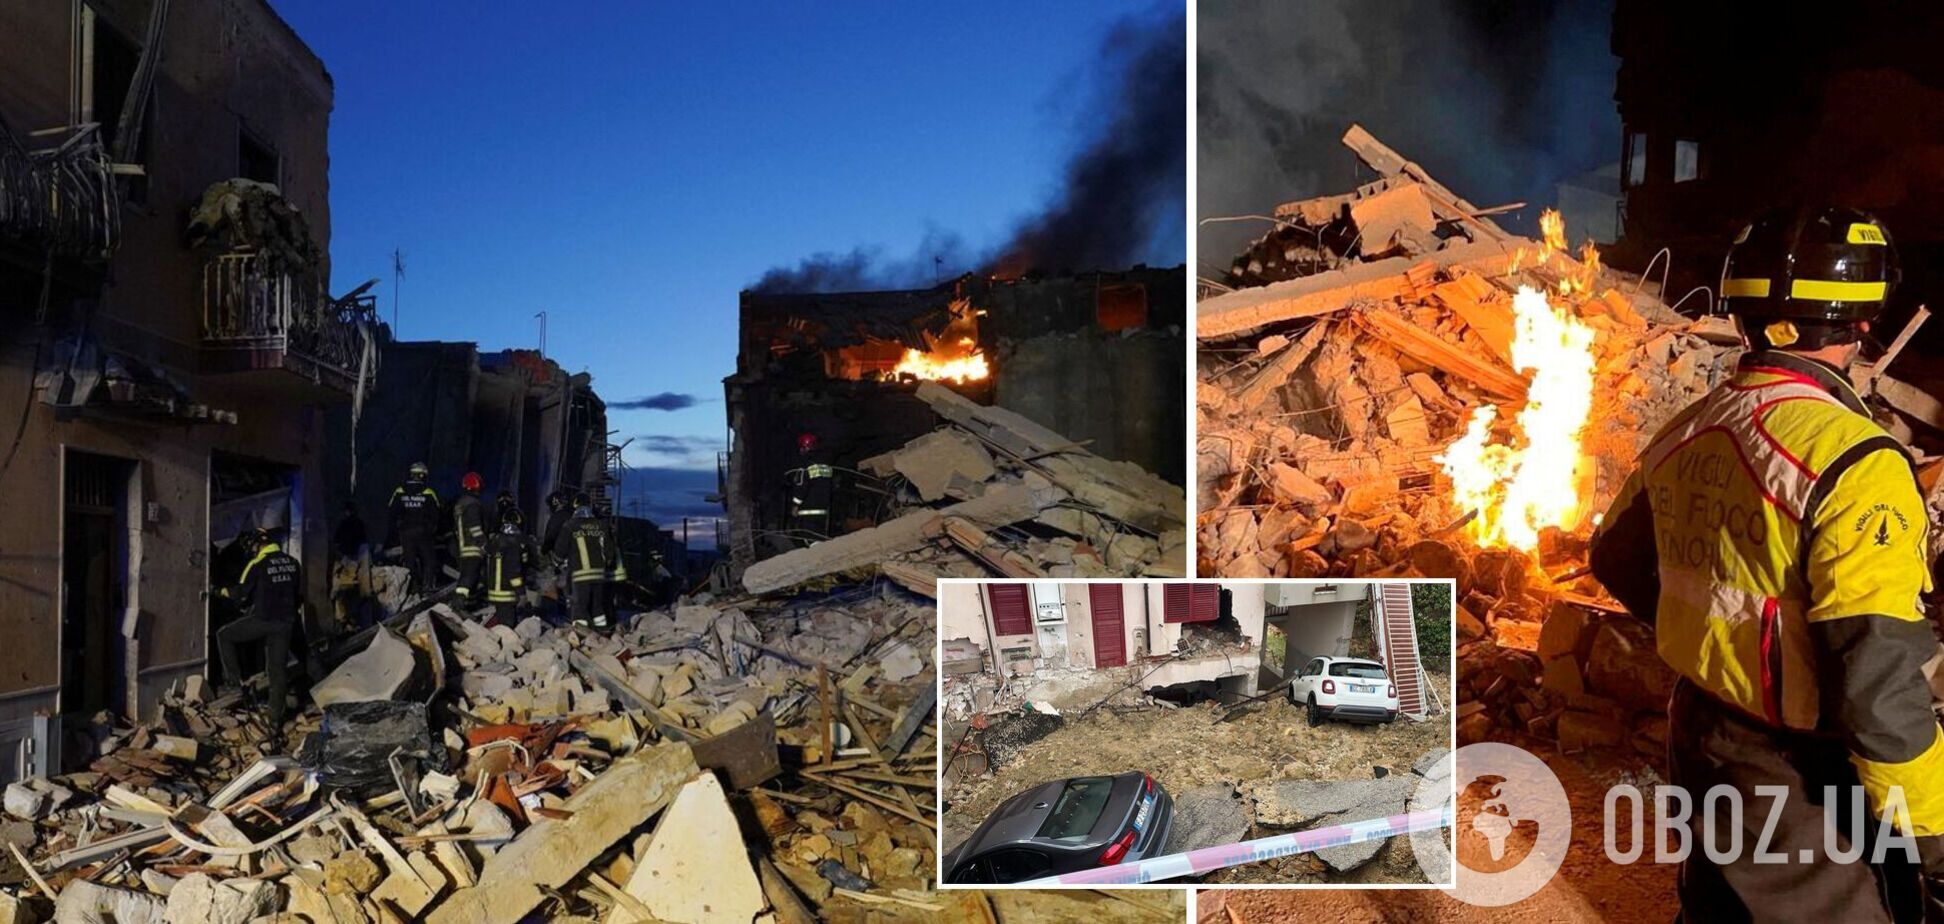 В Італії внаслідок вибуху обвалилися будинки: семеро людей загинули, пошуки зниклих продовжуються. Фото і відео